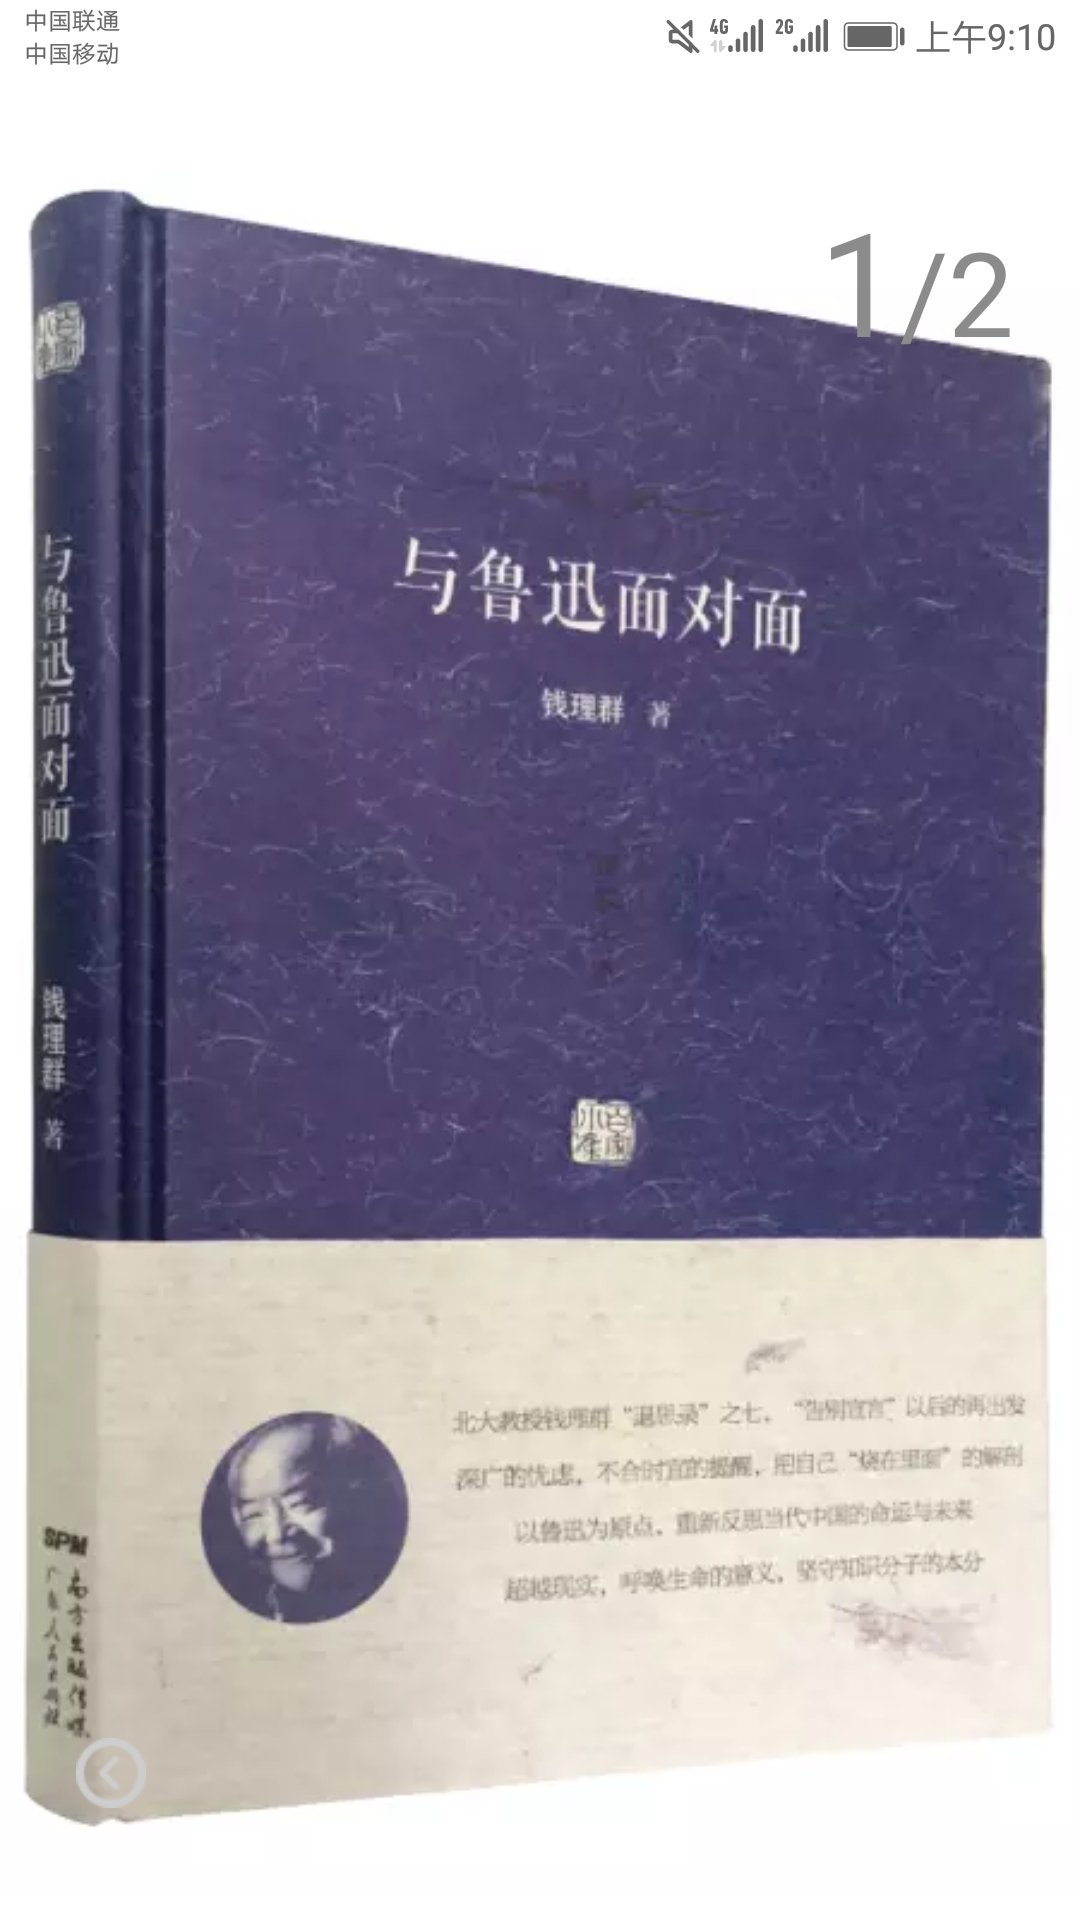 鲁迅先生是中国的文豪，他的小说读了不少，物流包装都很好，值得一读